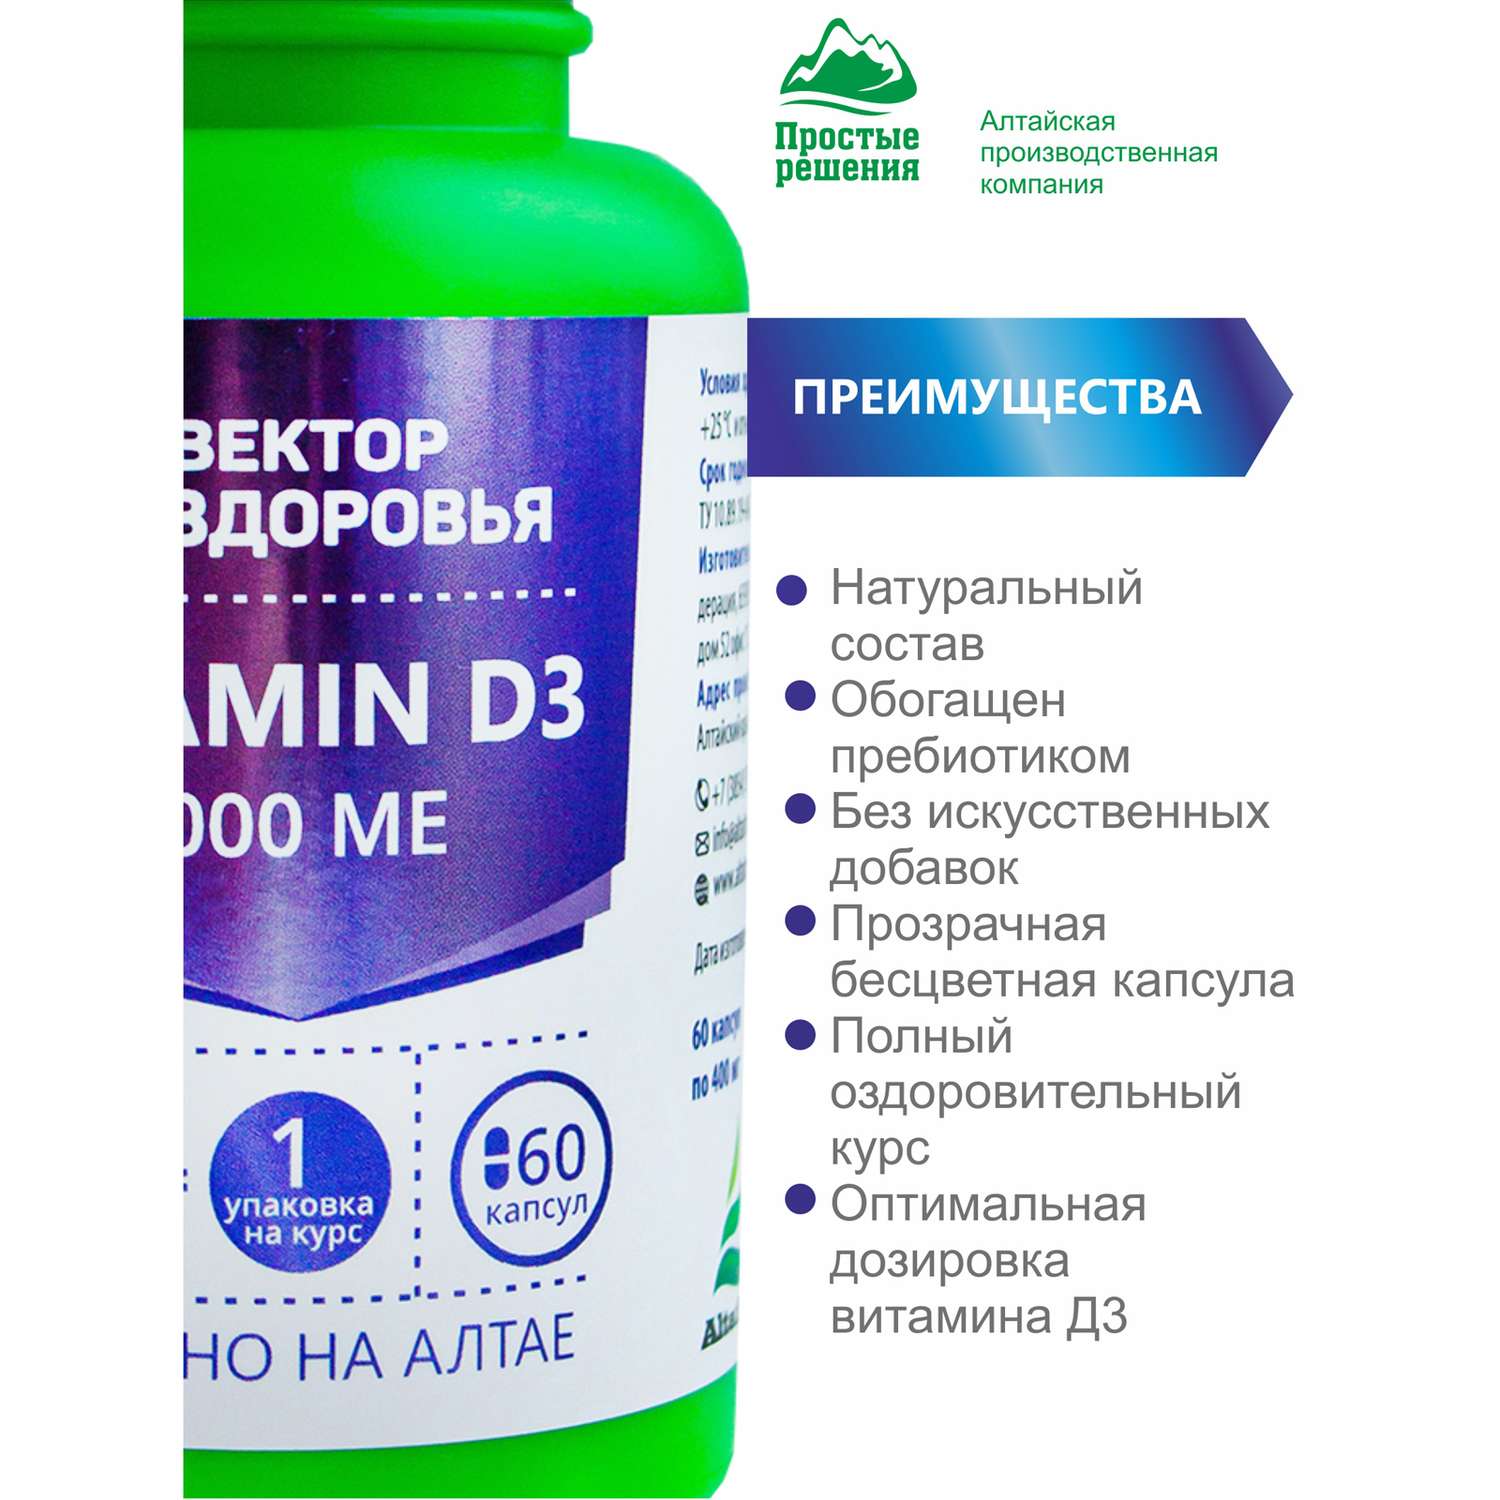 Концетраты пищевые Алтайские традиции Комплекс Витамин D3 4000 МЕ 60 капсул - фото 4